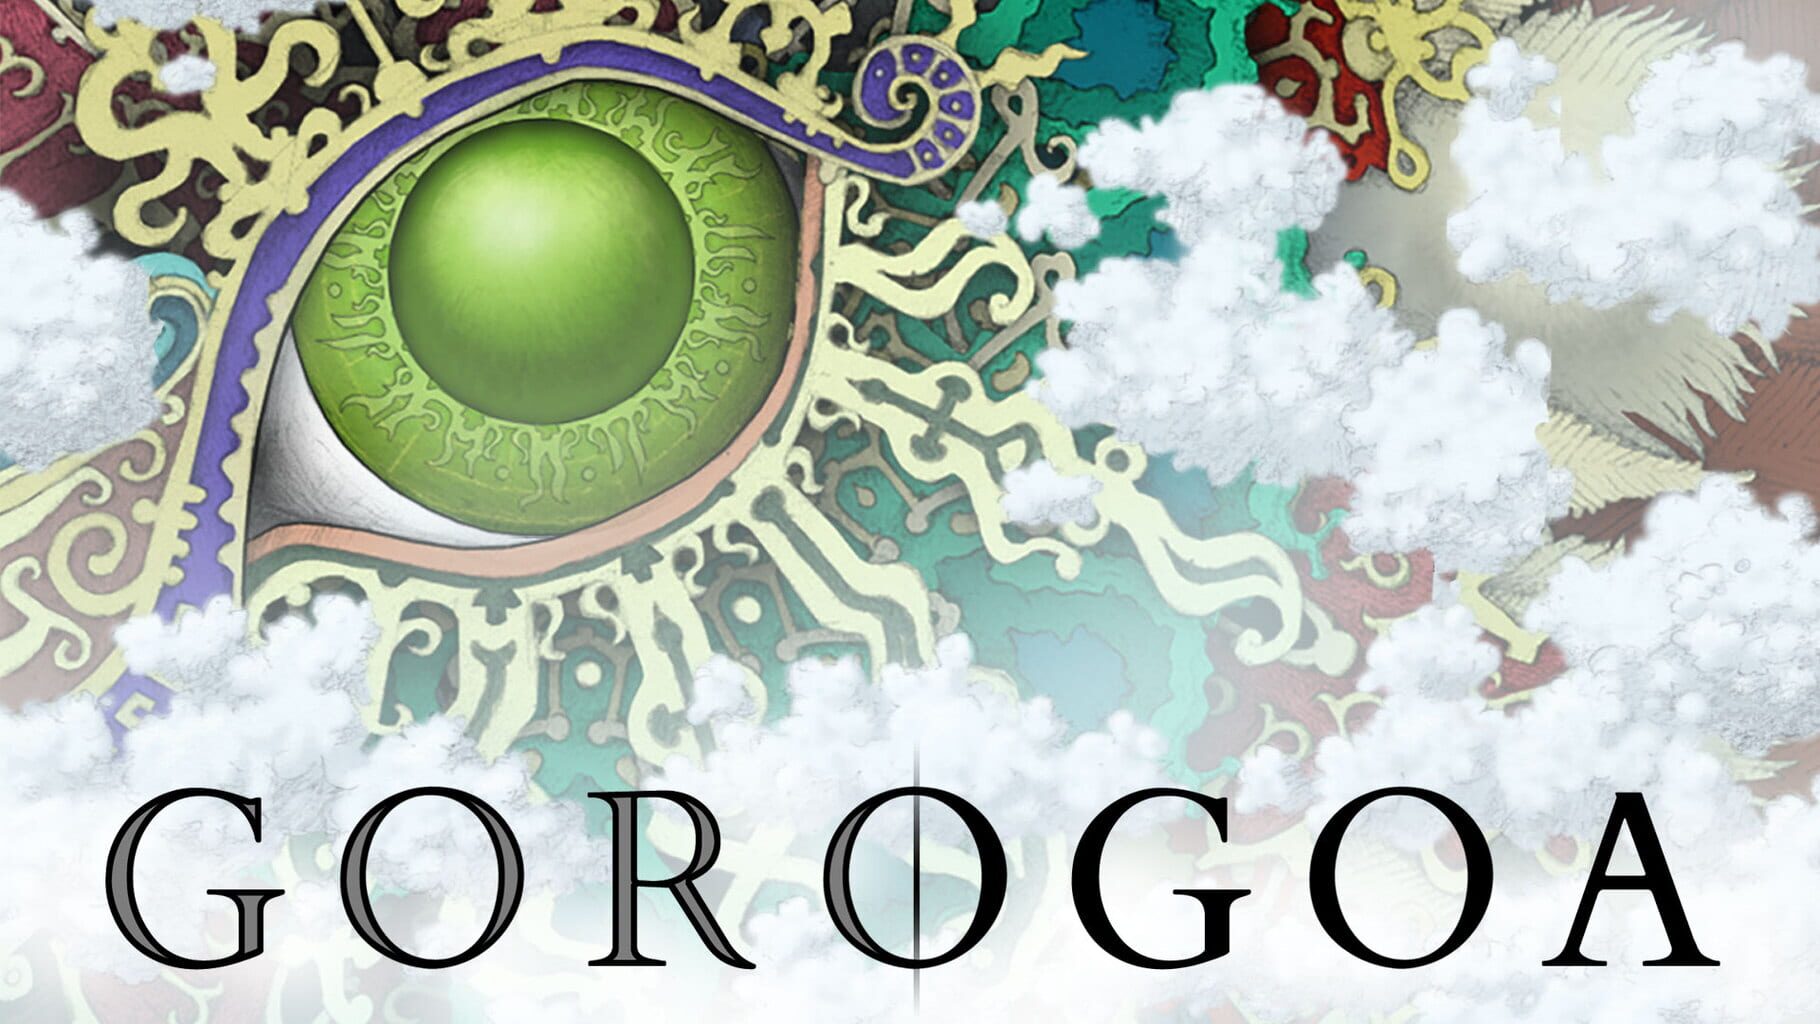 Gorogoa artwork